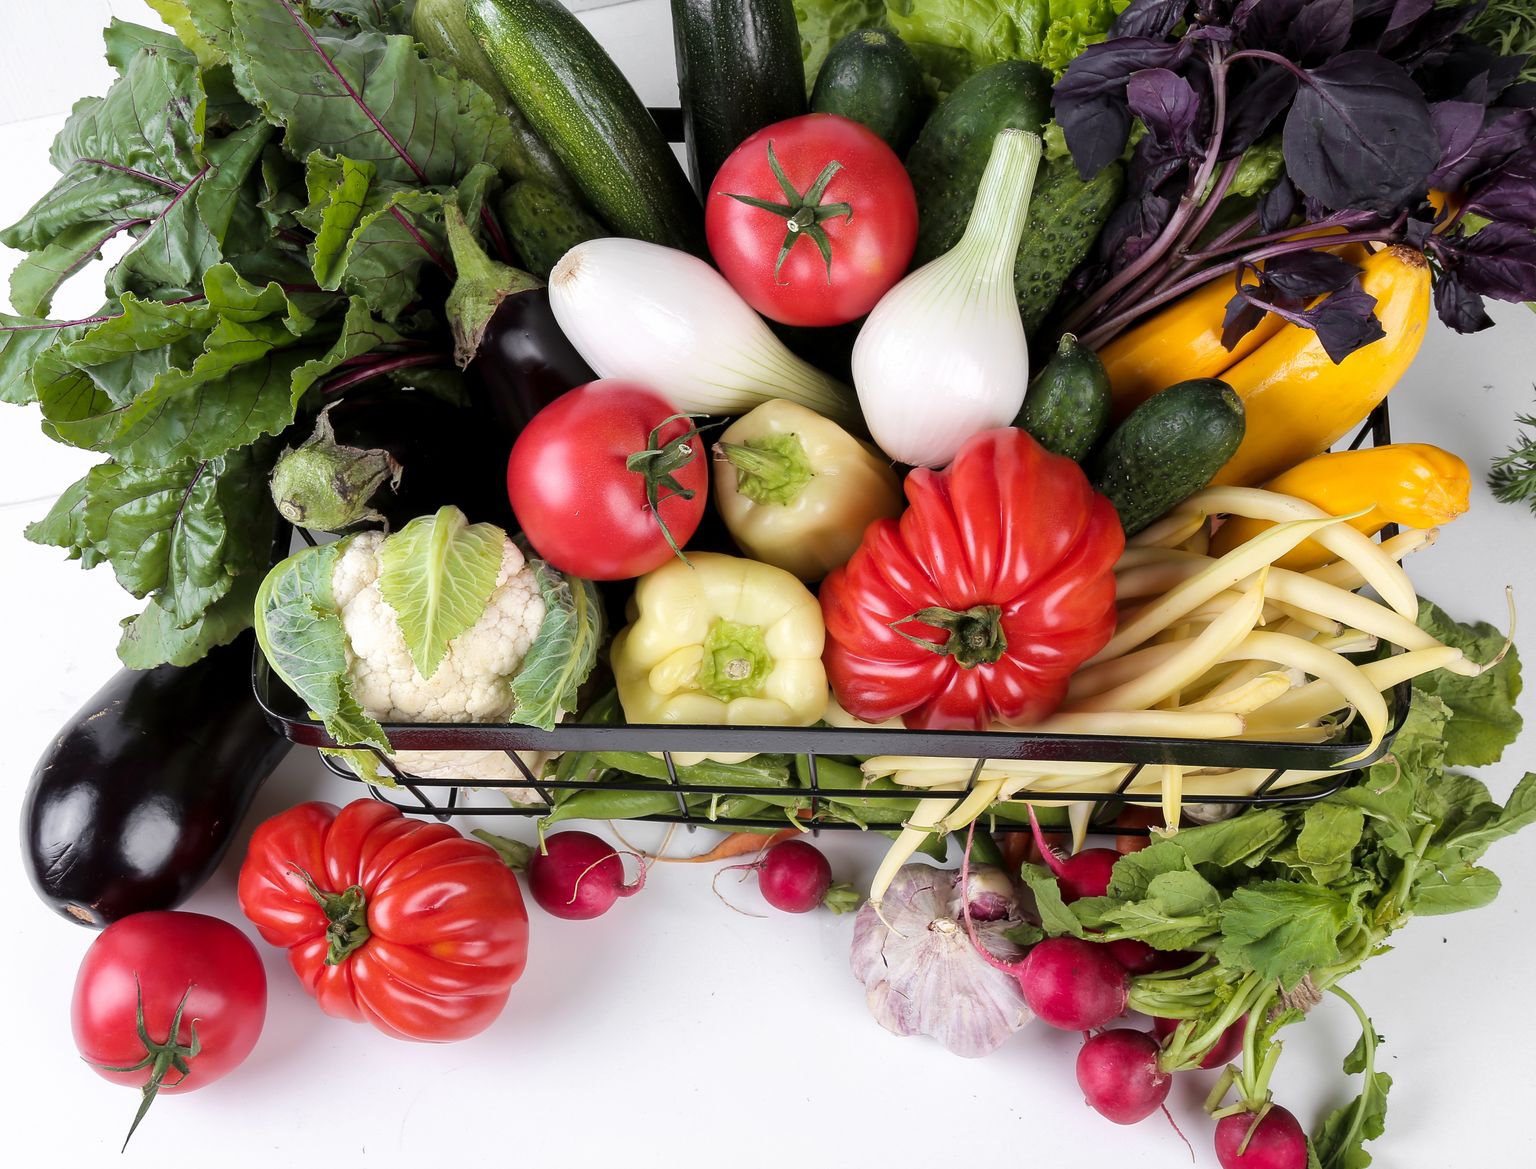 Köögiviljad annavad vähe kilokaloreid, kuid neis leidub palju vitamiine ja mineraalaineid.